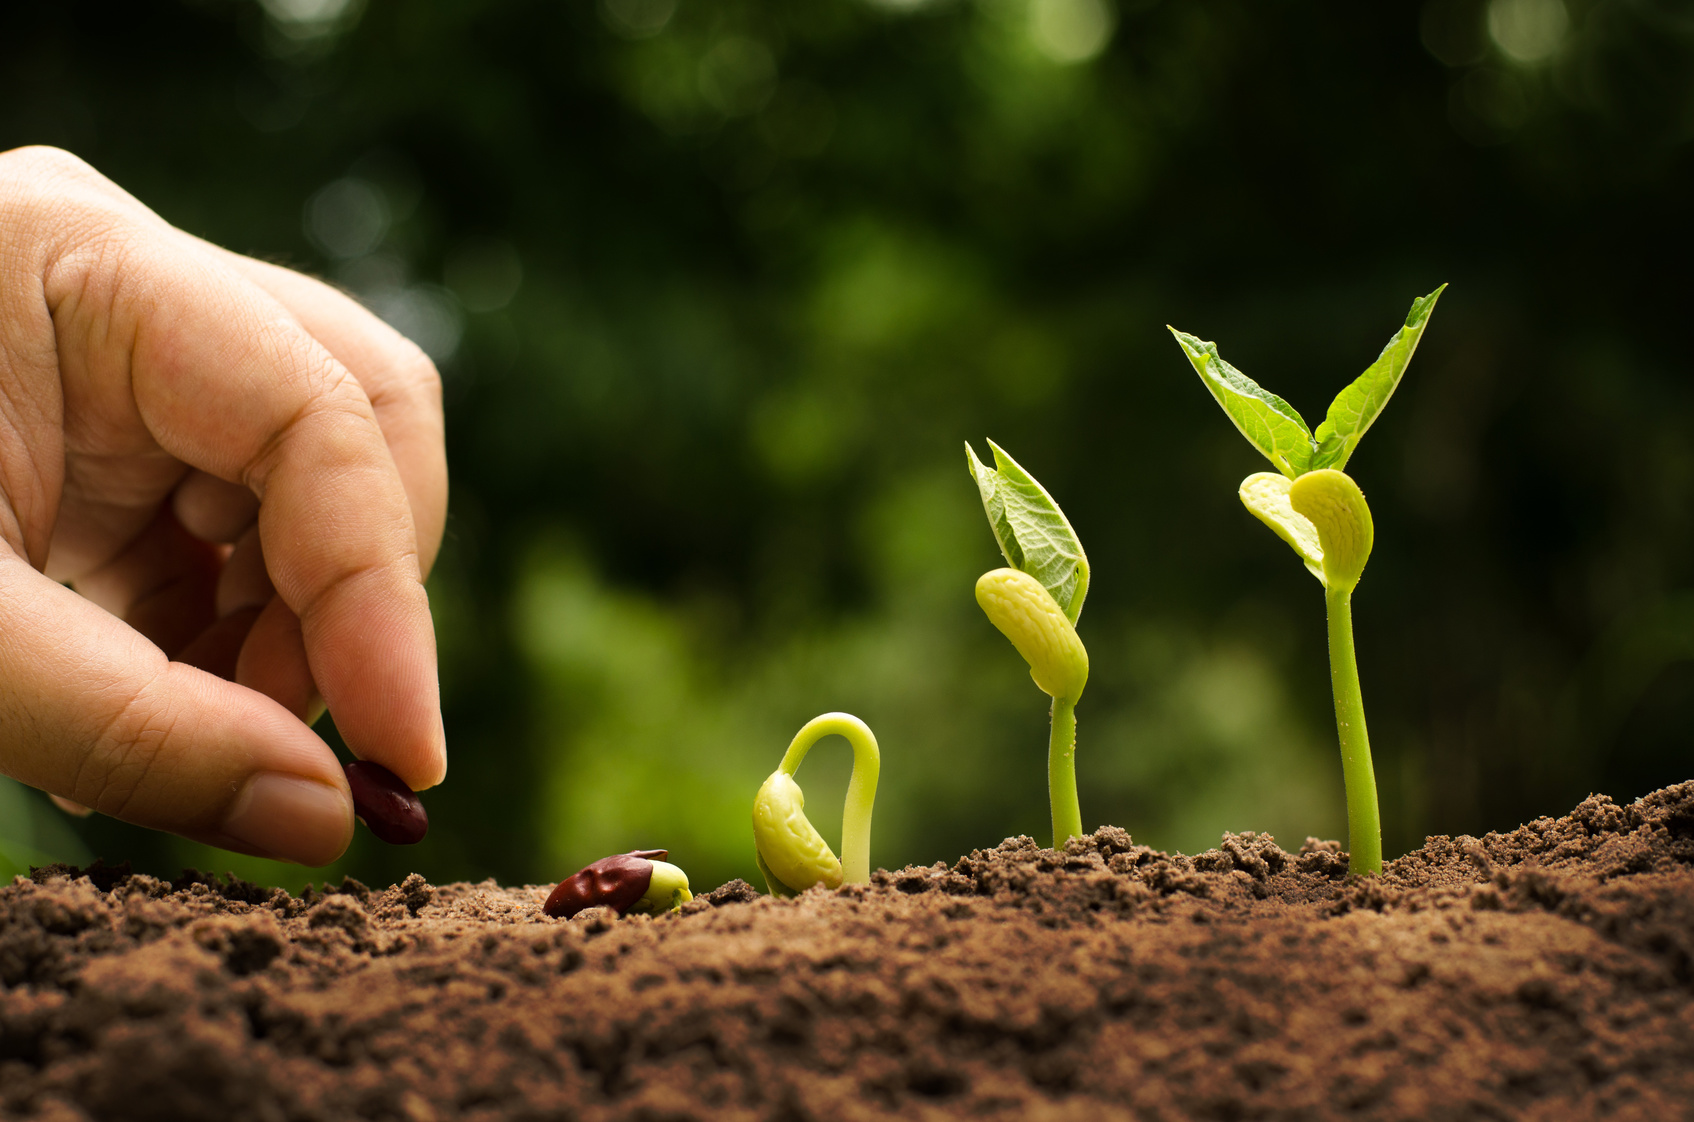 “La bioeconomia circolare: sfide e opportunità per l’agricoltura e l’agroalimentare”